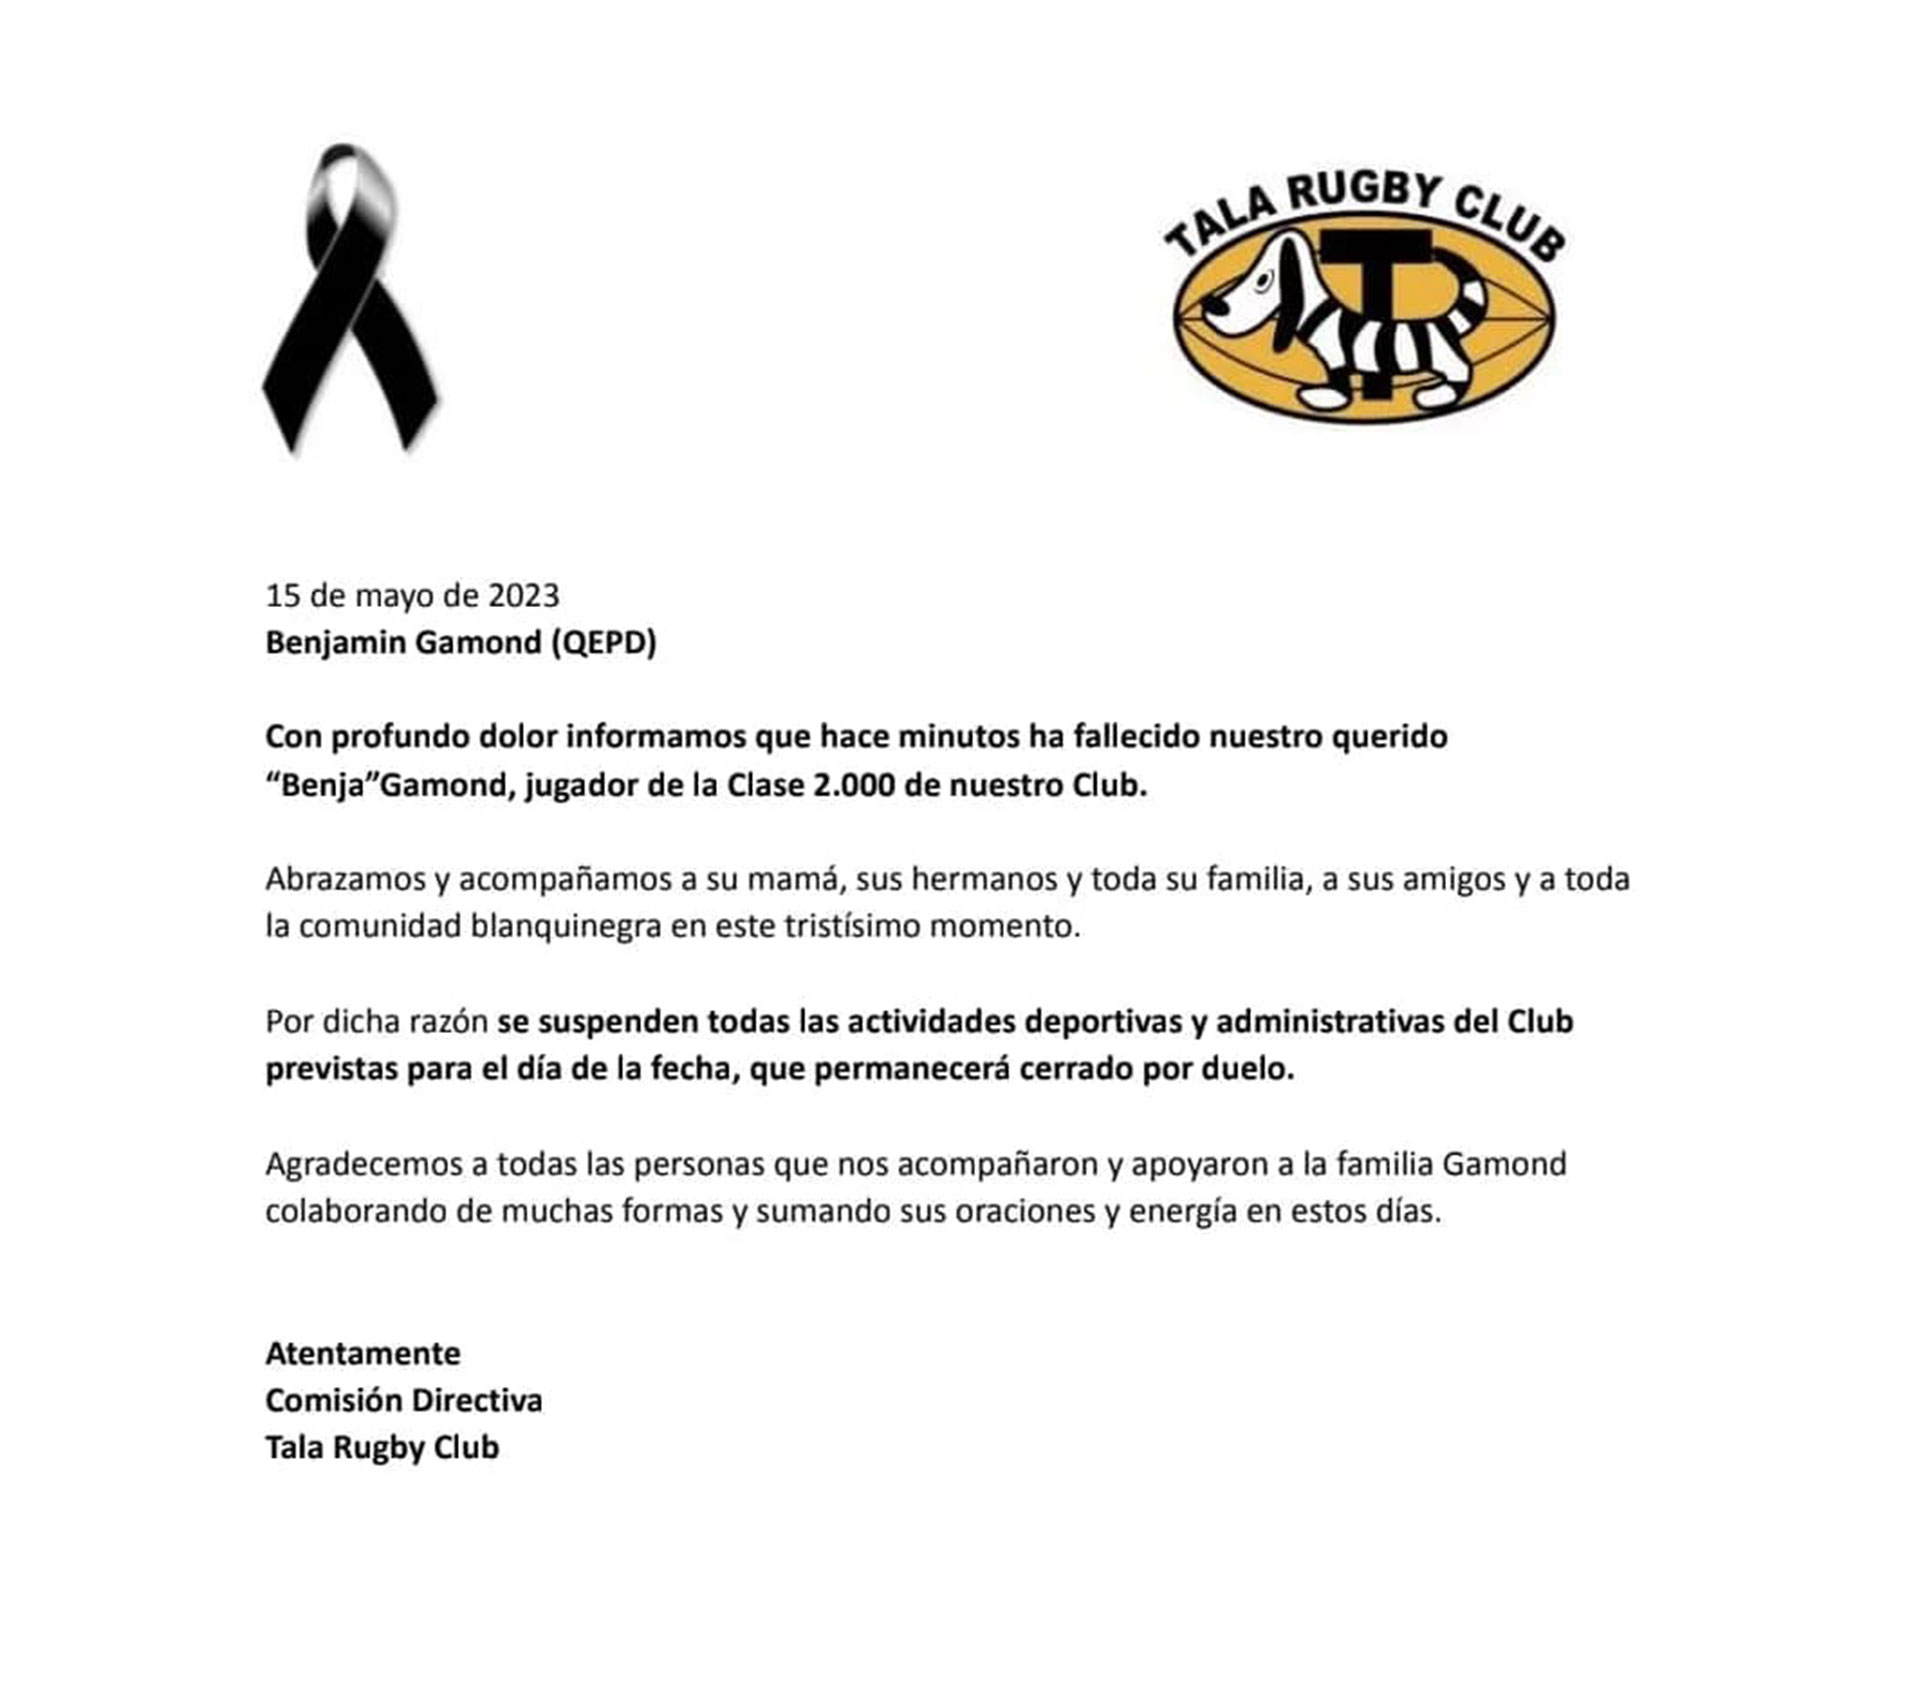 Comunicado de El Tala Rugby Club tras la muerte de Benjamín Gamond. 